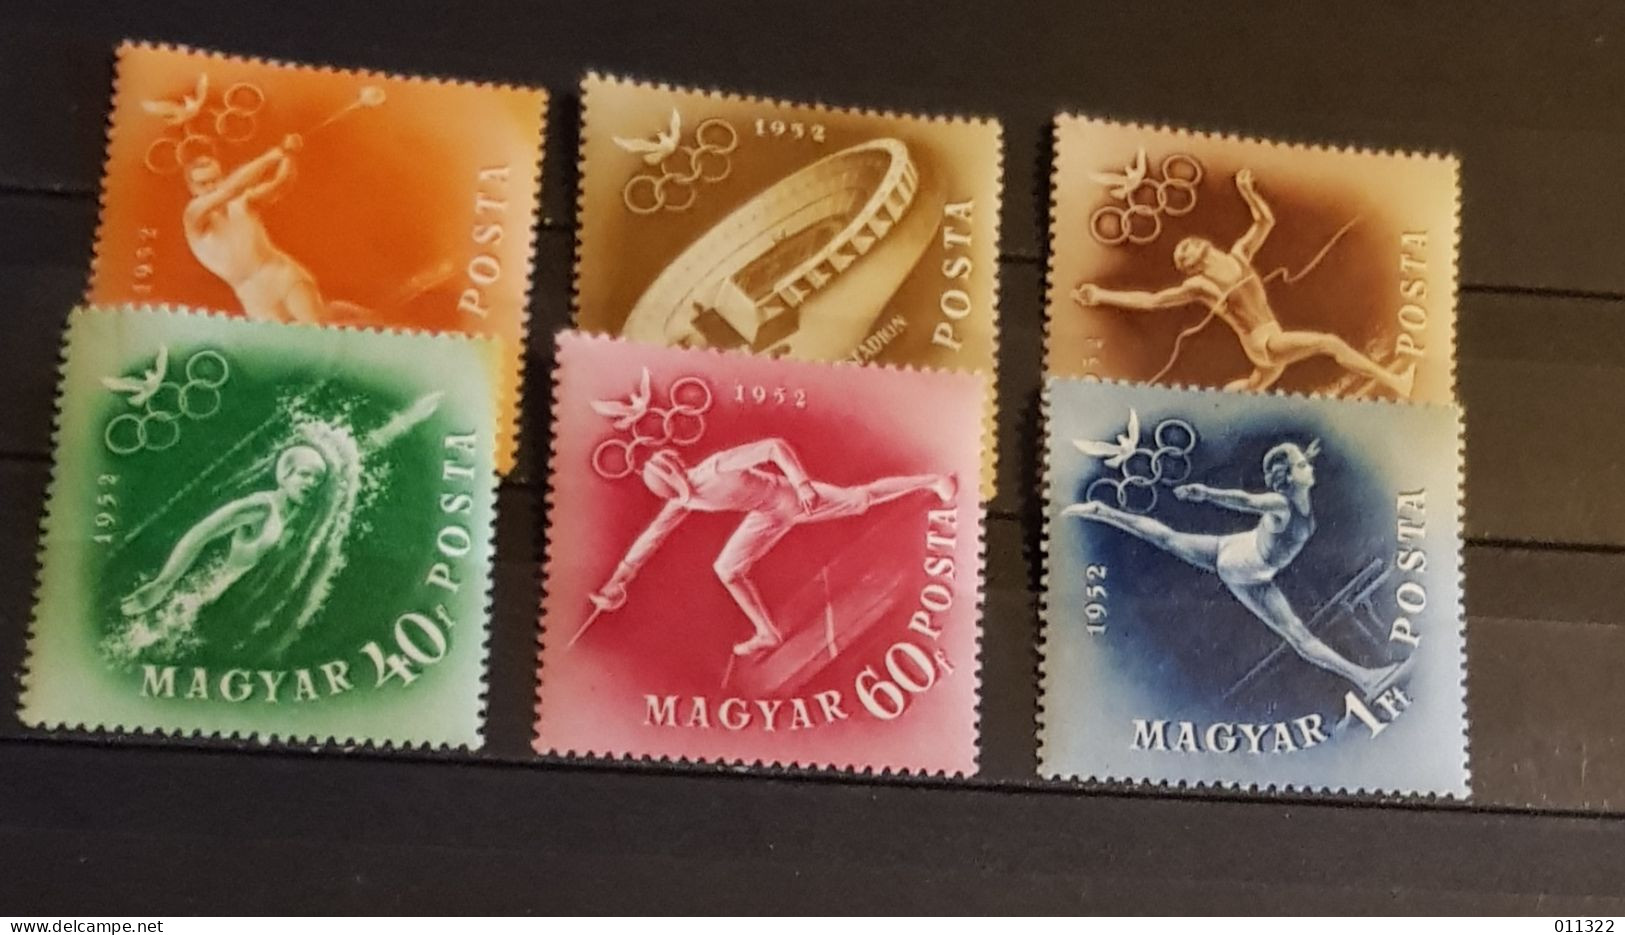 HUNGARY OLYMPIC GAMES HELSINKI SET MNH - Sommer 1952: Helsinki